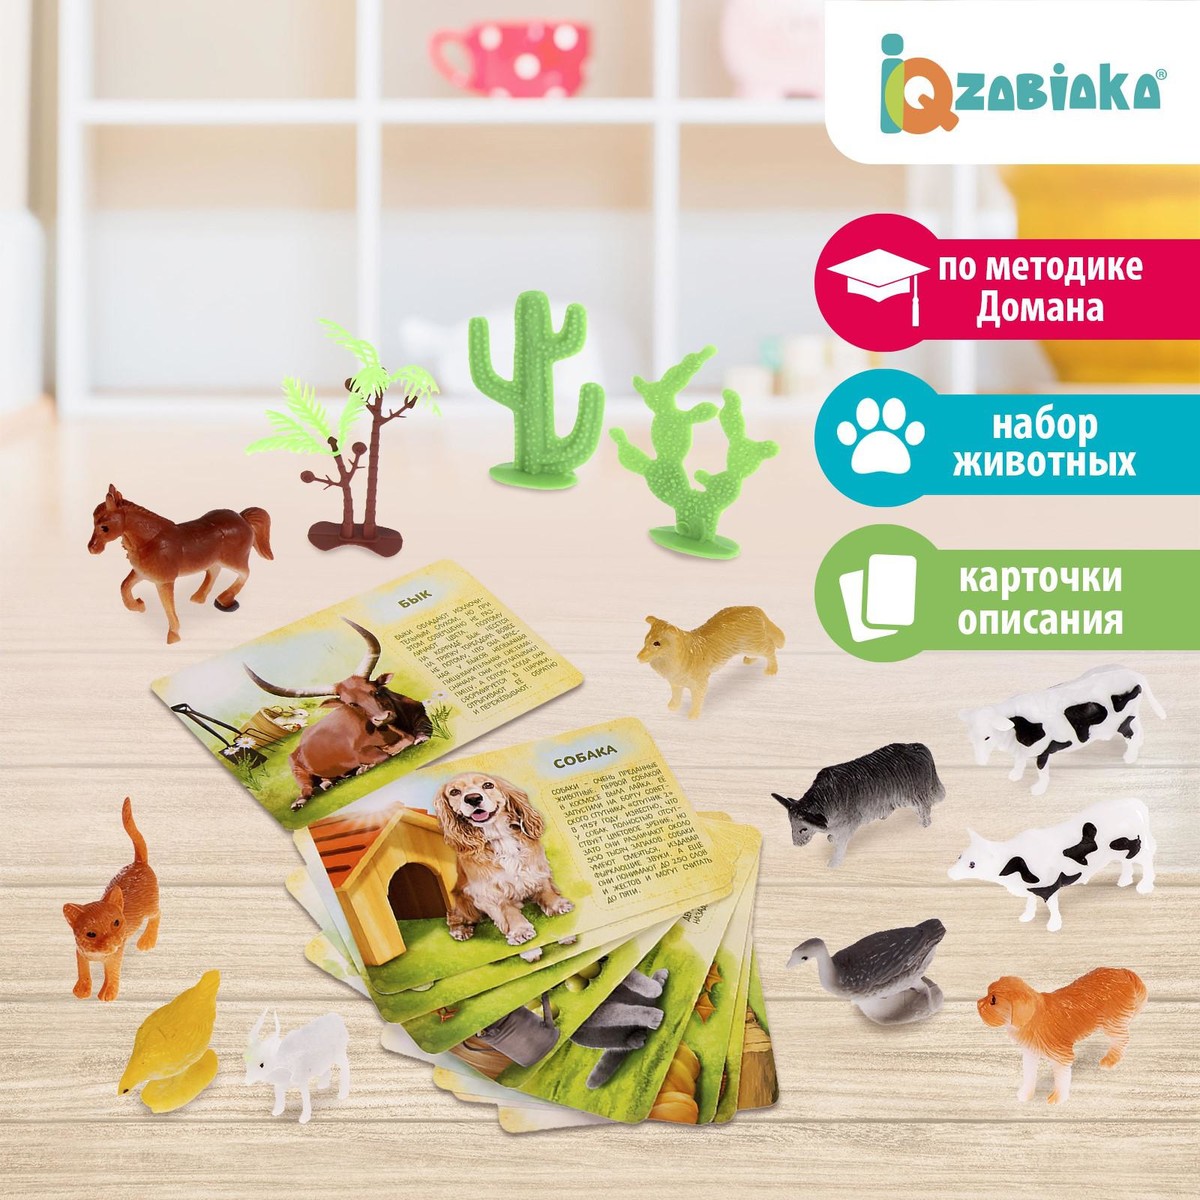 фото Набор животных с обучающими карточками iq-zabiaka